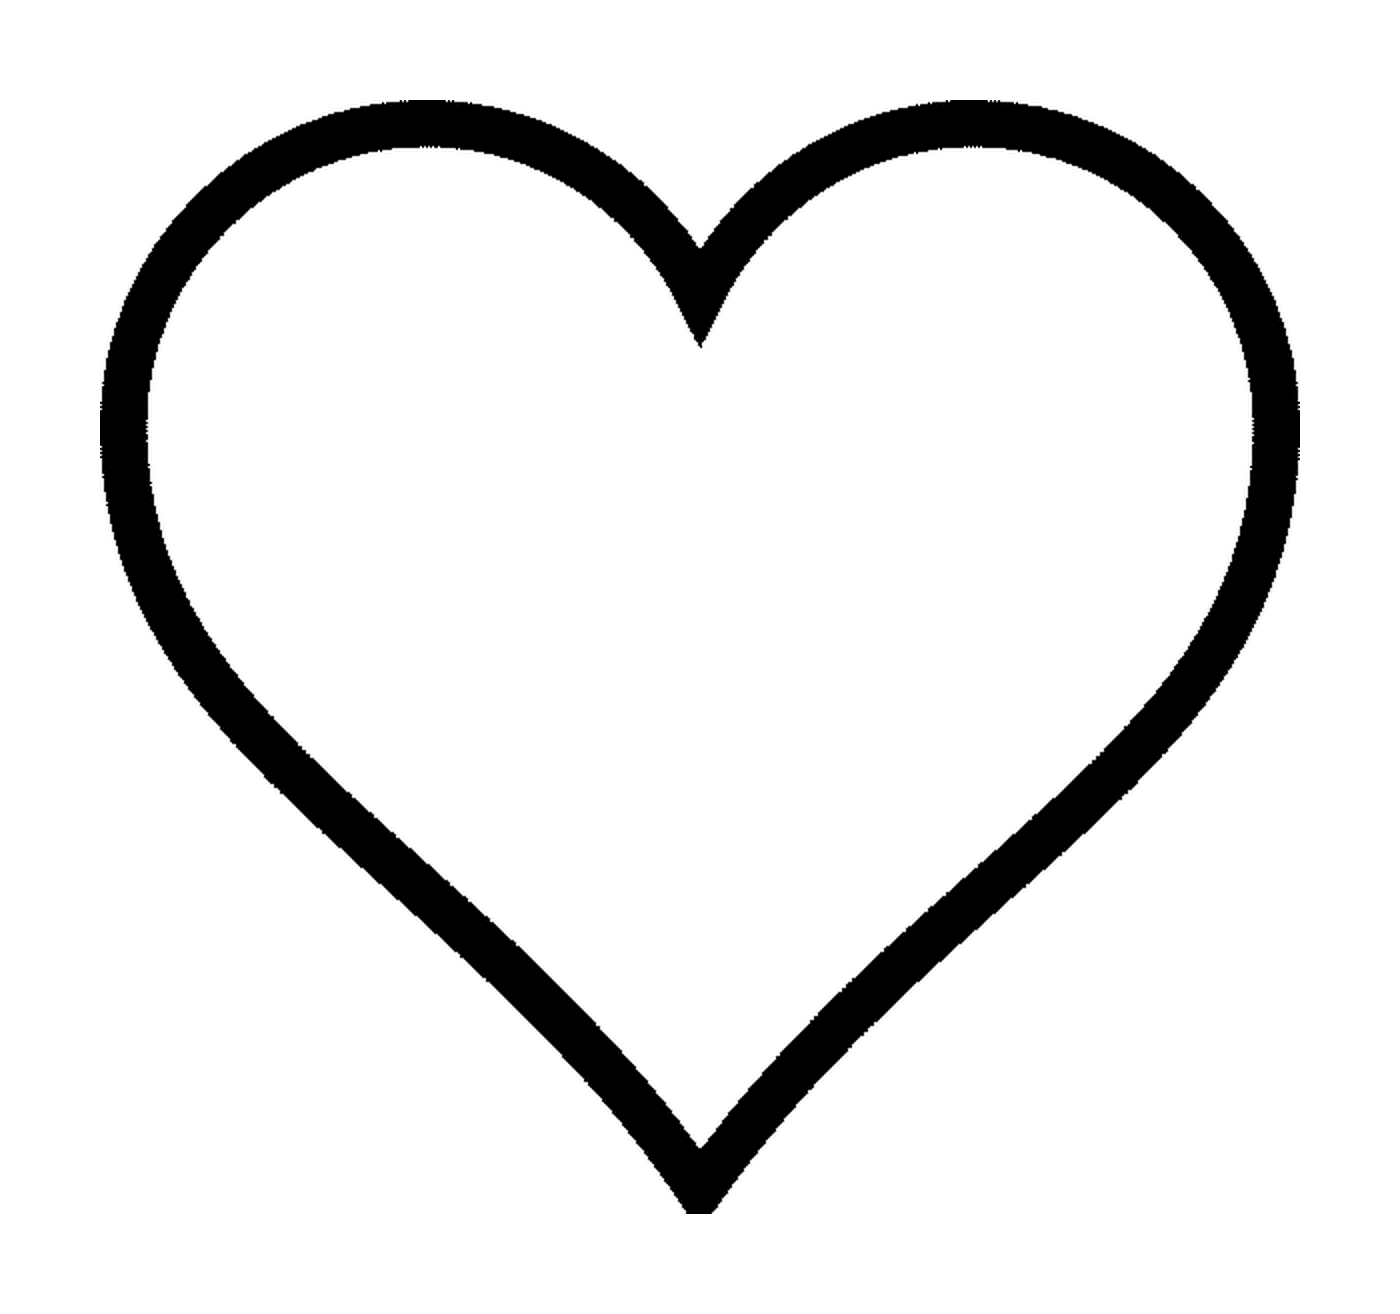  Un'immagine di un cuore 